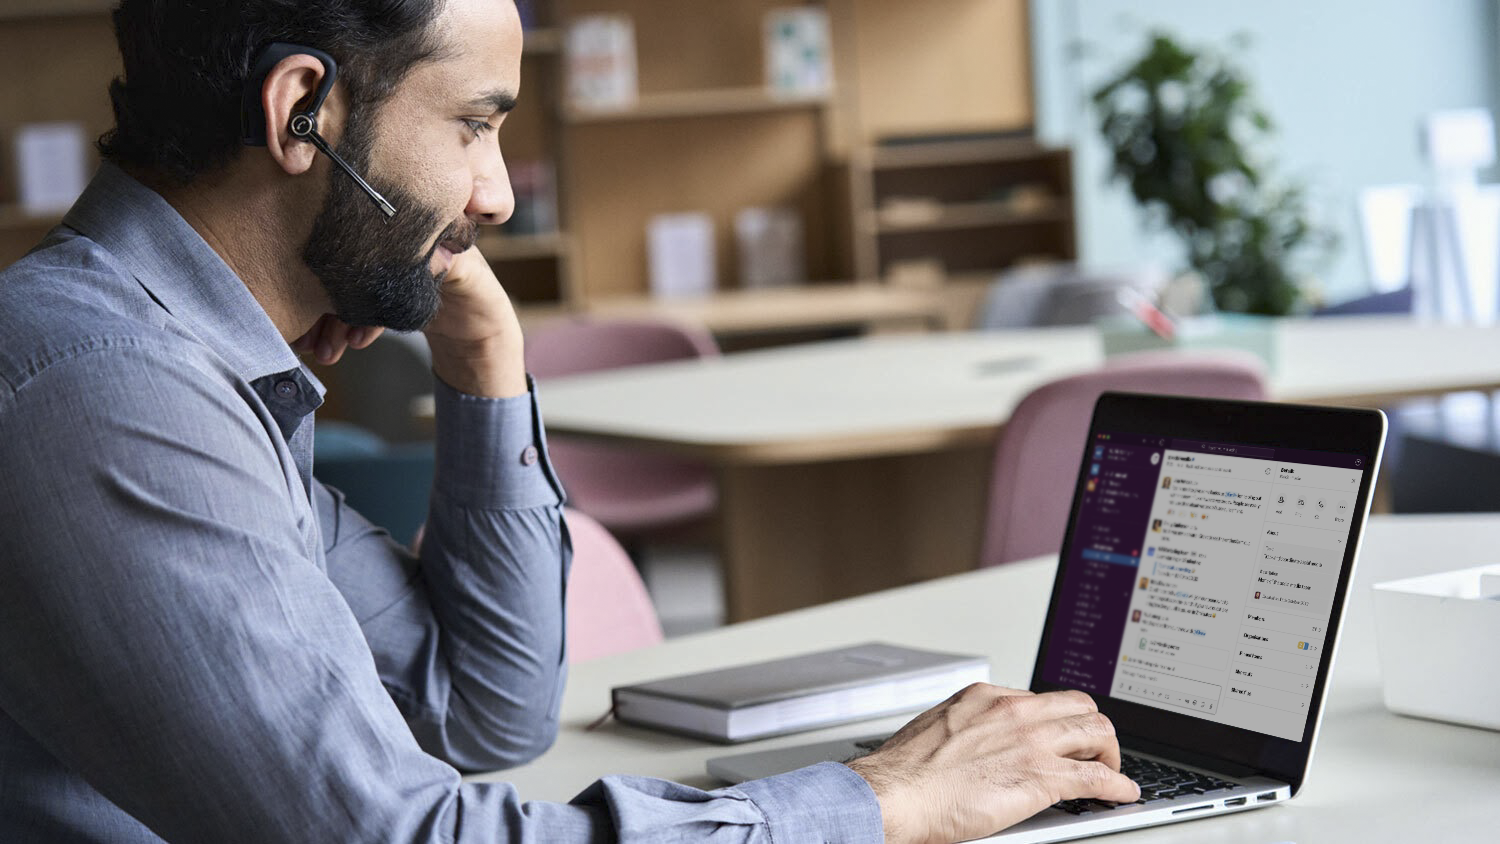 Een man met baard en headset die Slack gebruikt op een laptop